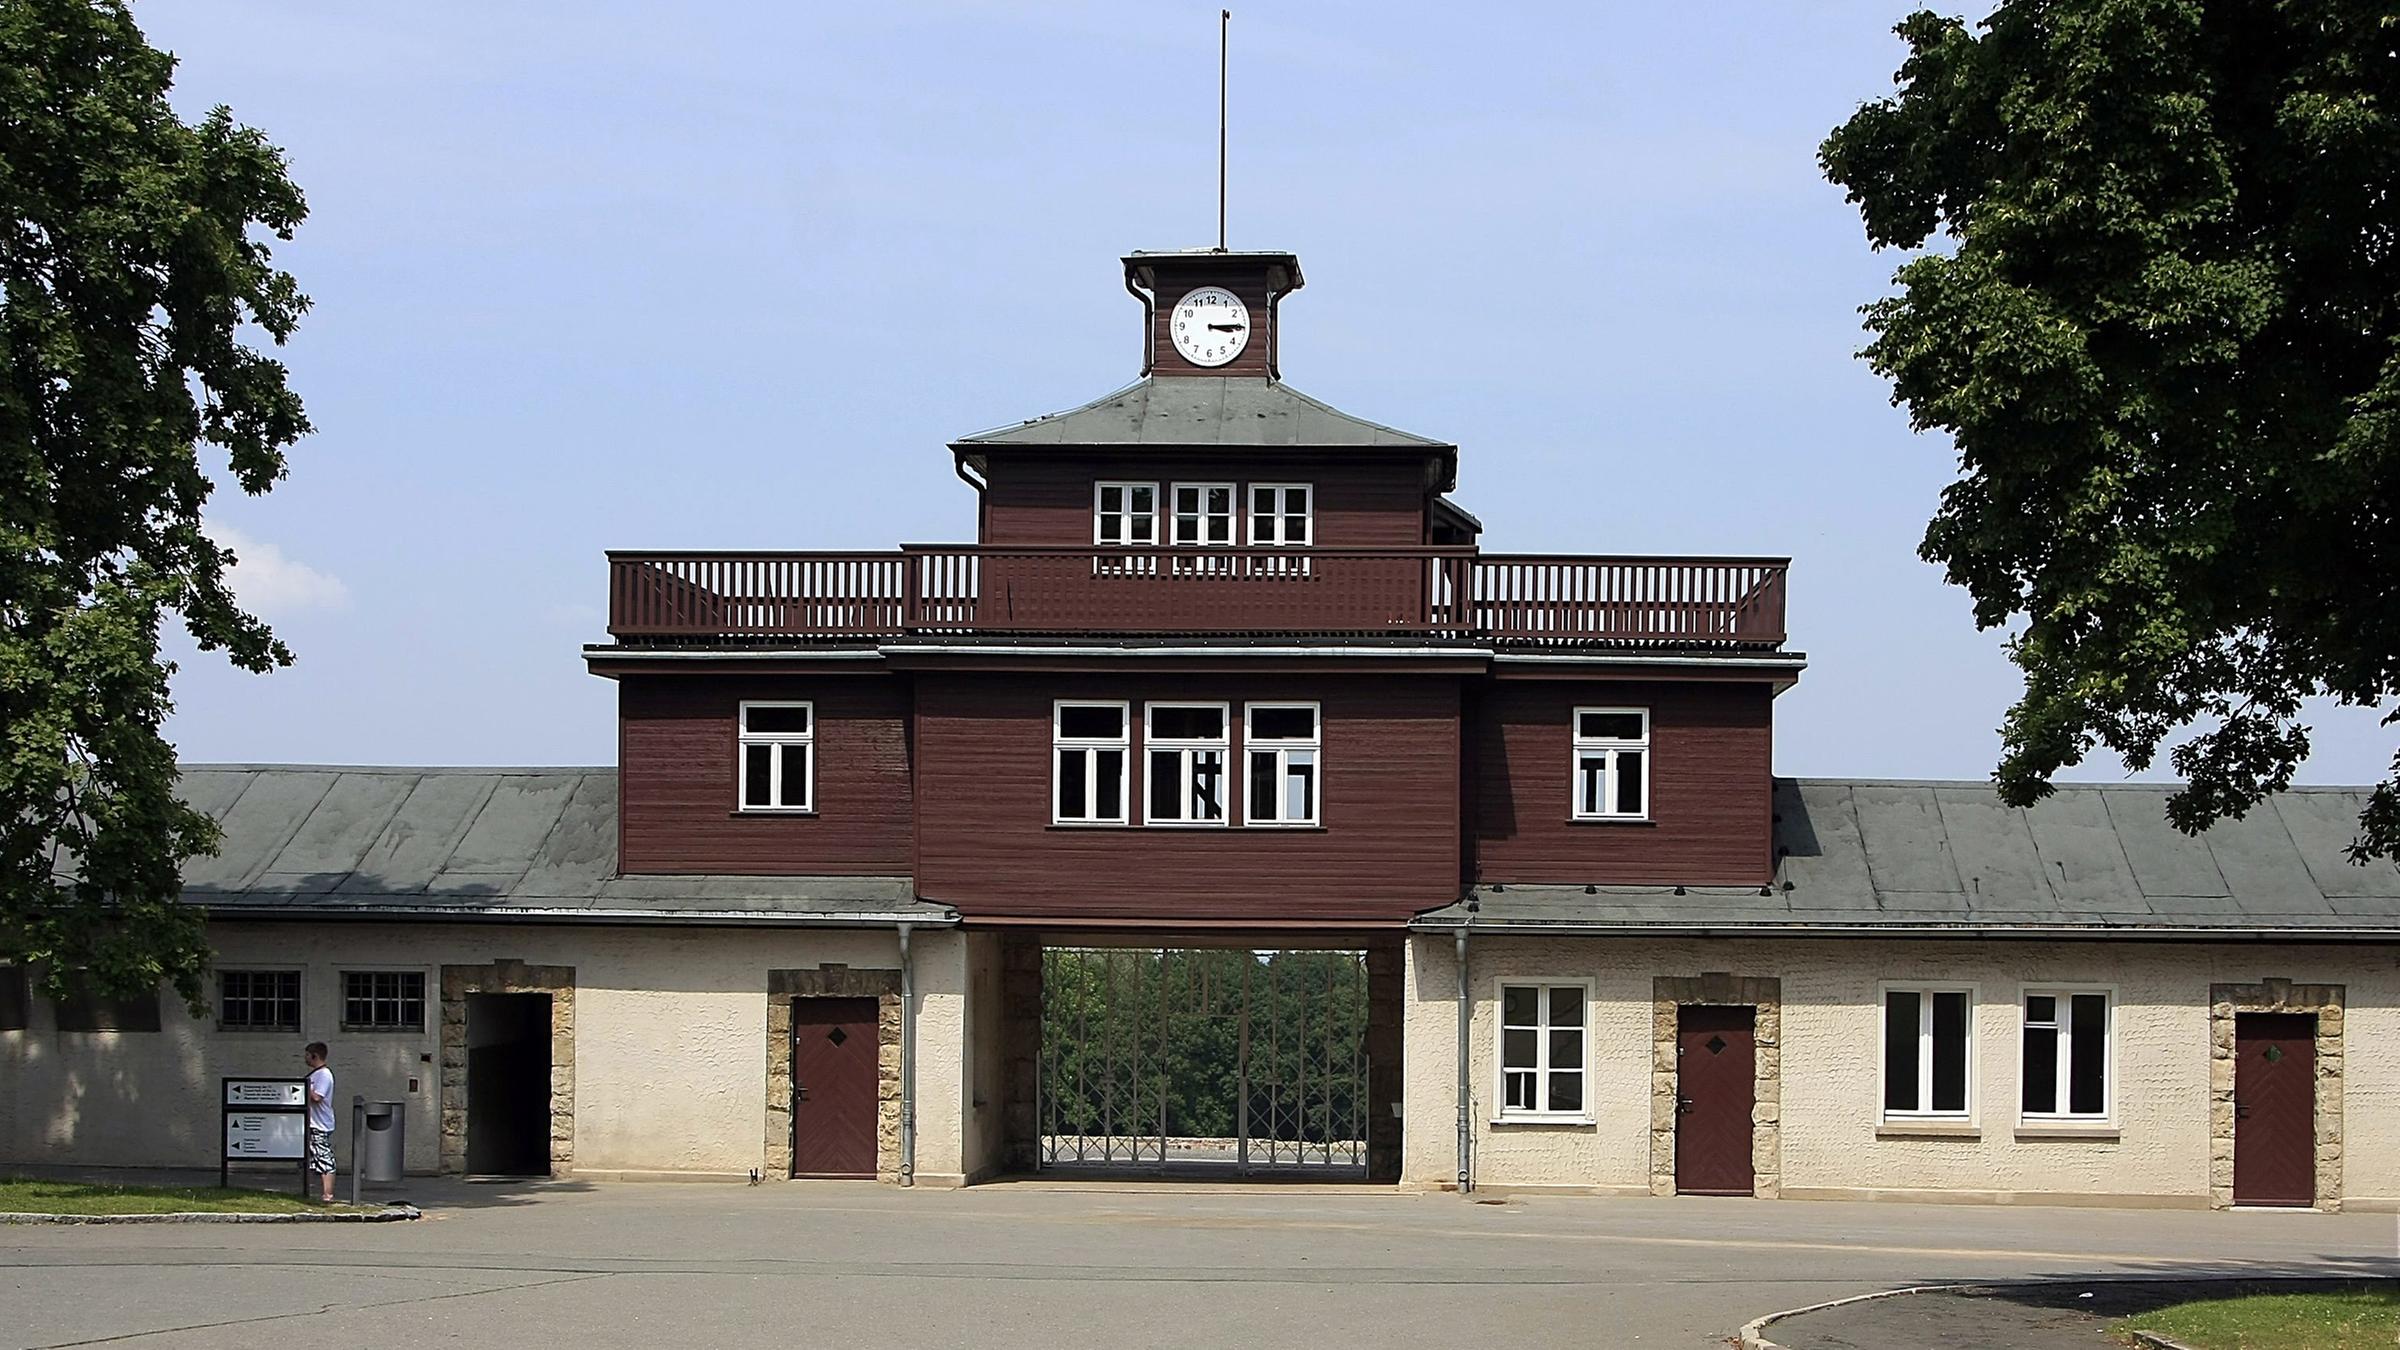 Archiv: Eingang des ehemaligen Konzentrationslager Buchenwald auf dem Ettersberg von Weimar am 26.07.2014.